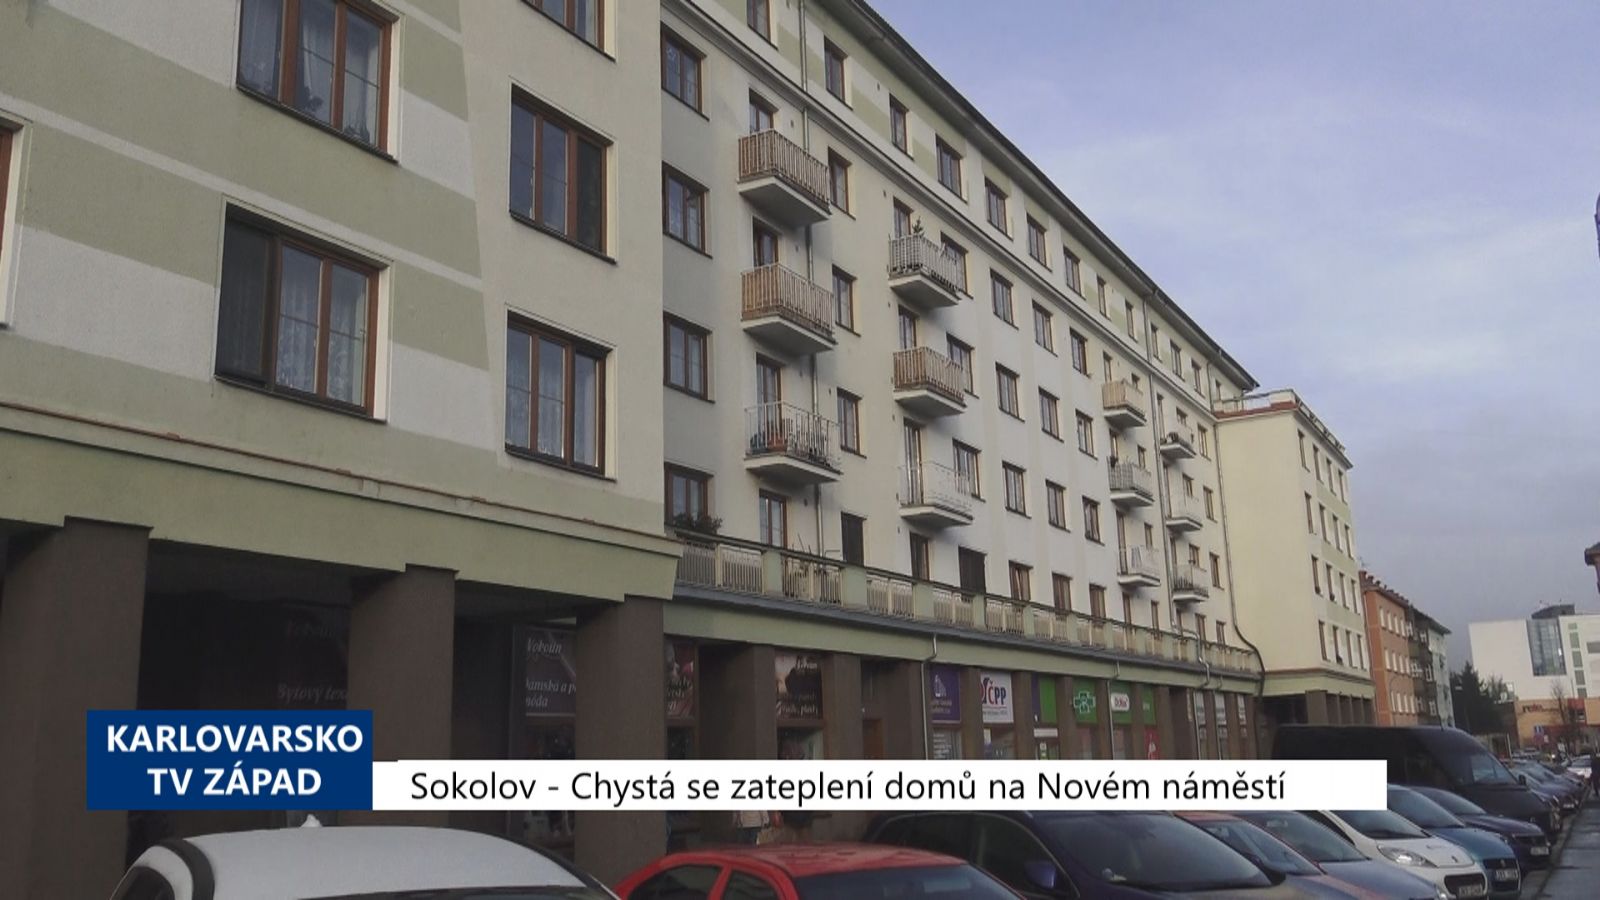 Sokolov: Chystá se zateplení domů na Novém náměstí (TV Západ)